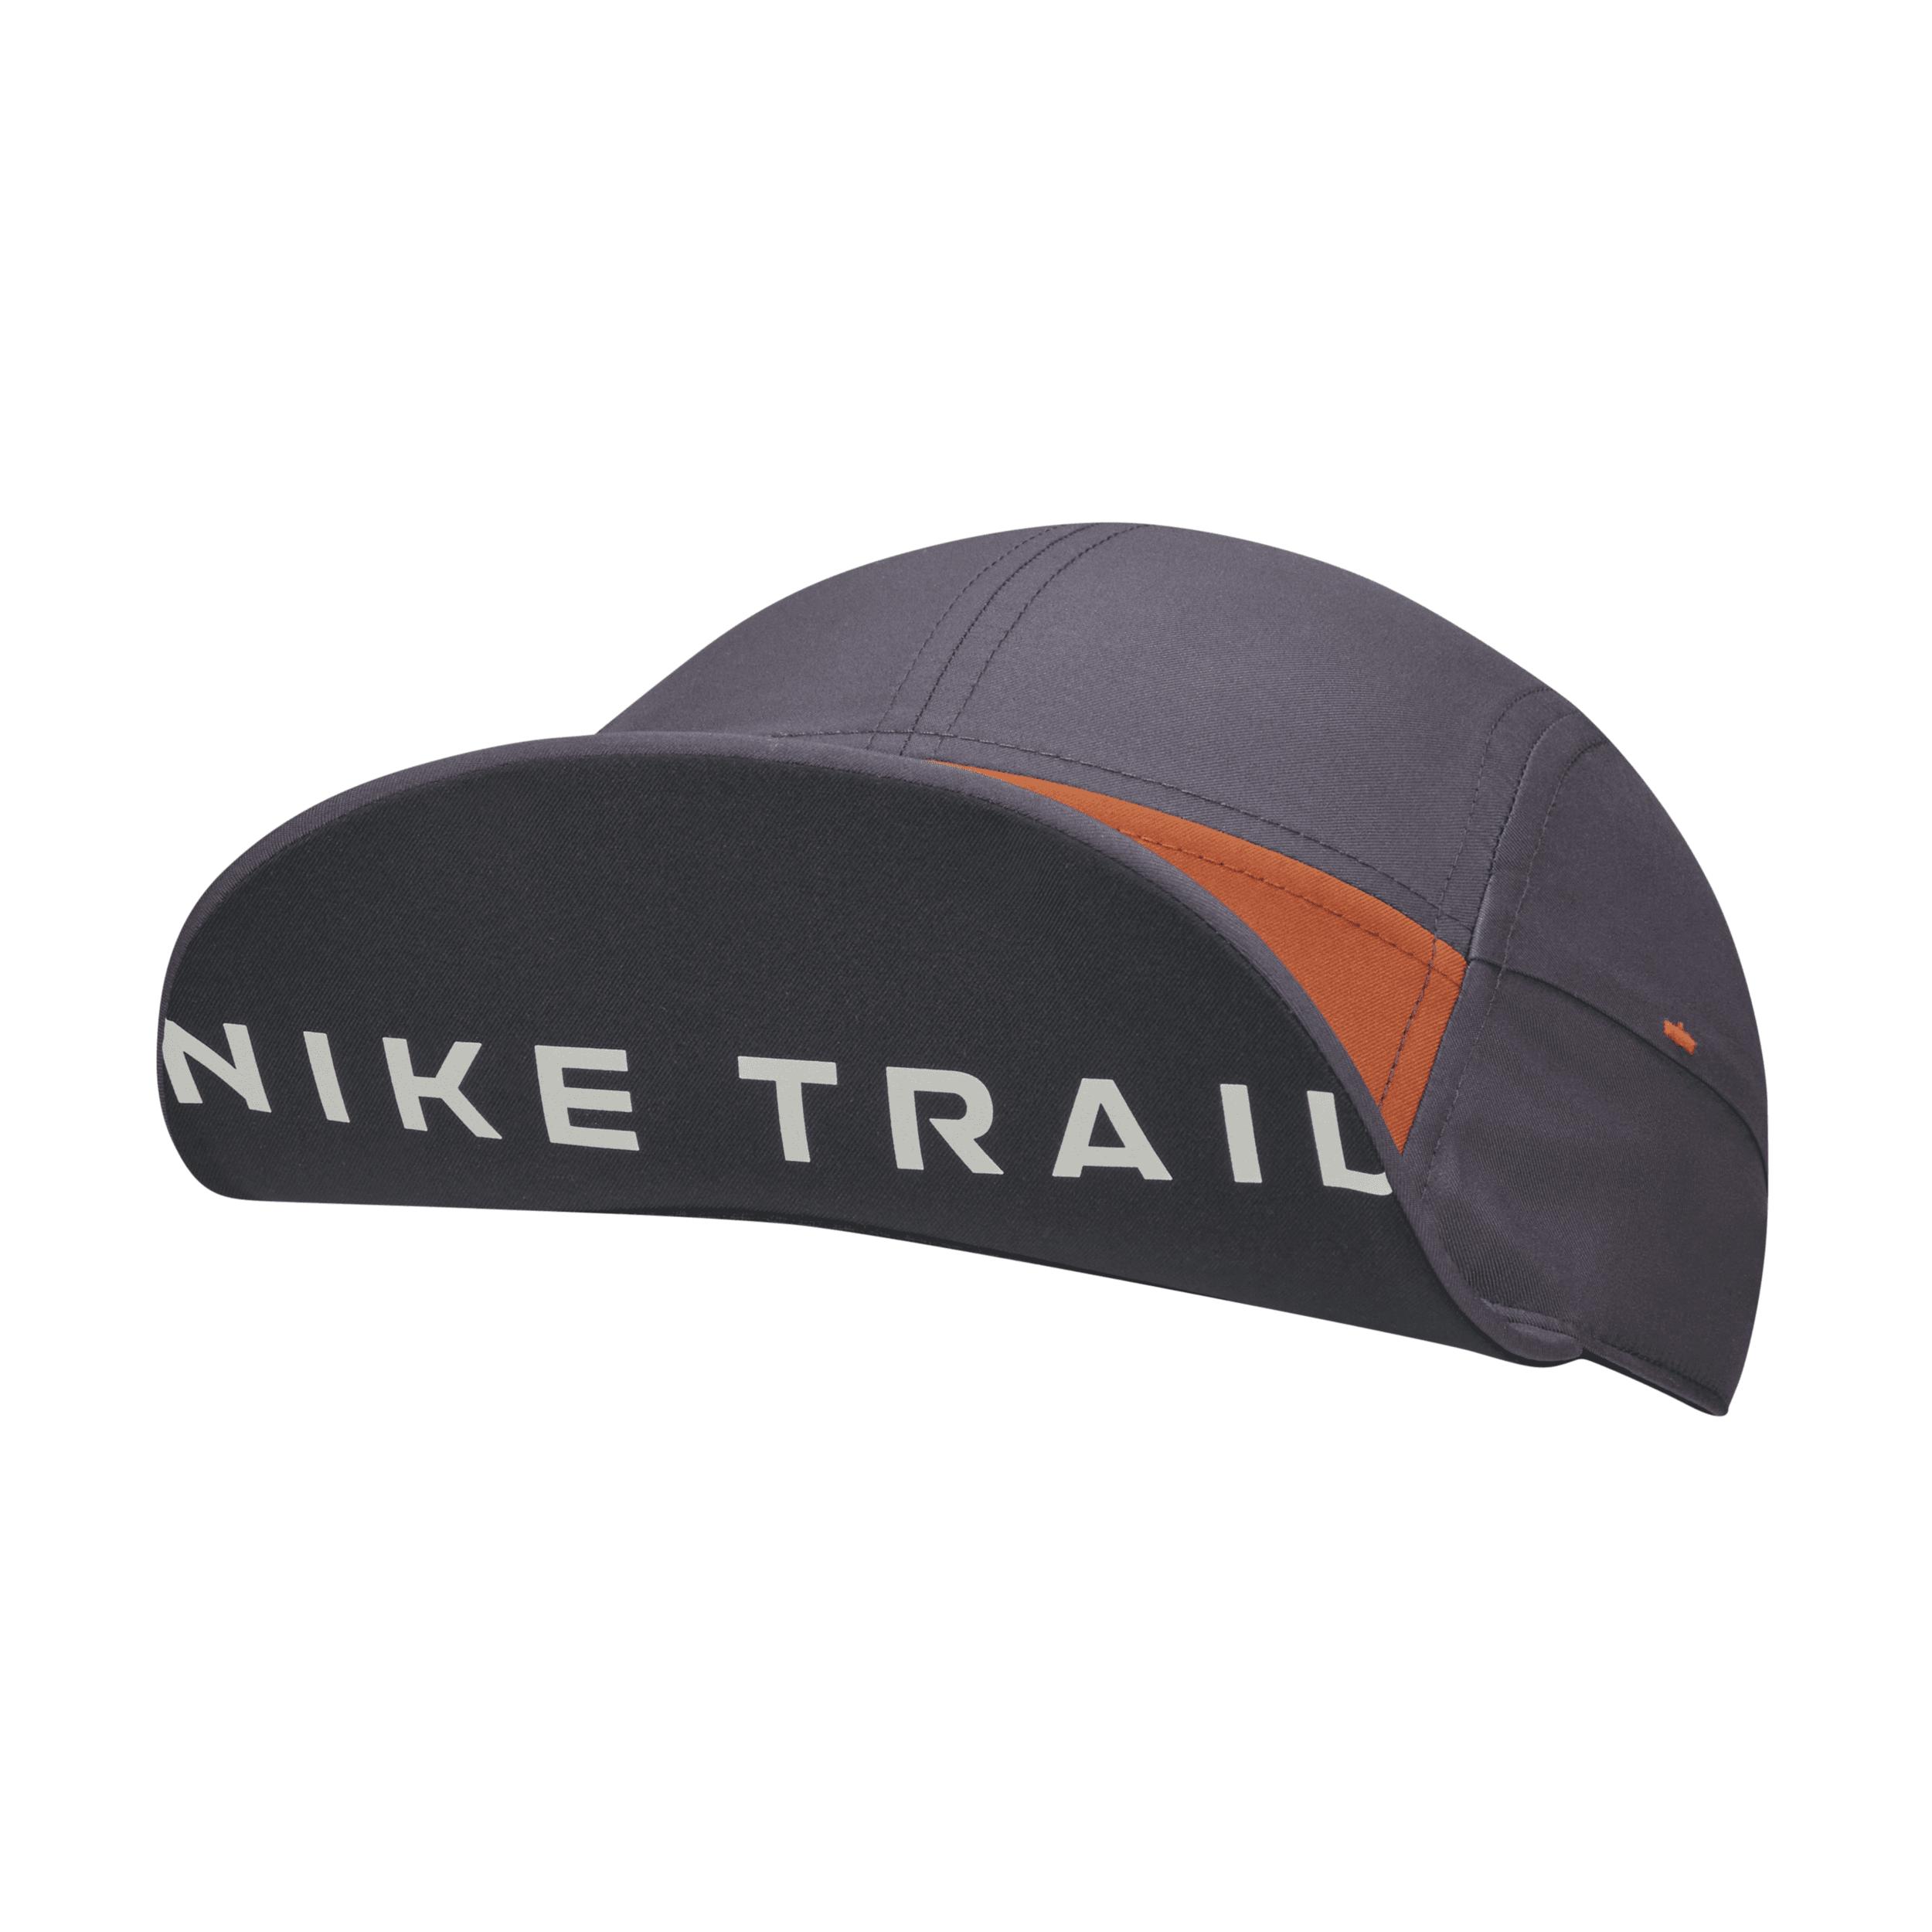 Nike Dri-fit Aw84 Trail Running Cap in Orange |